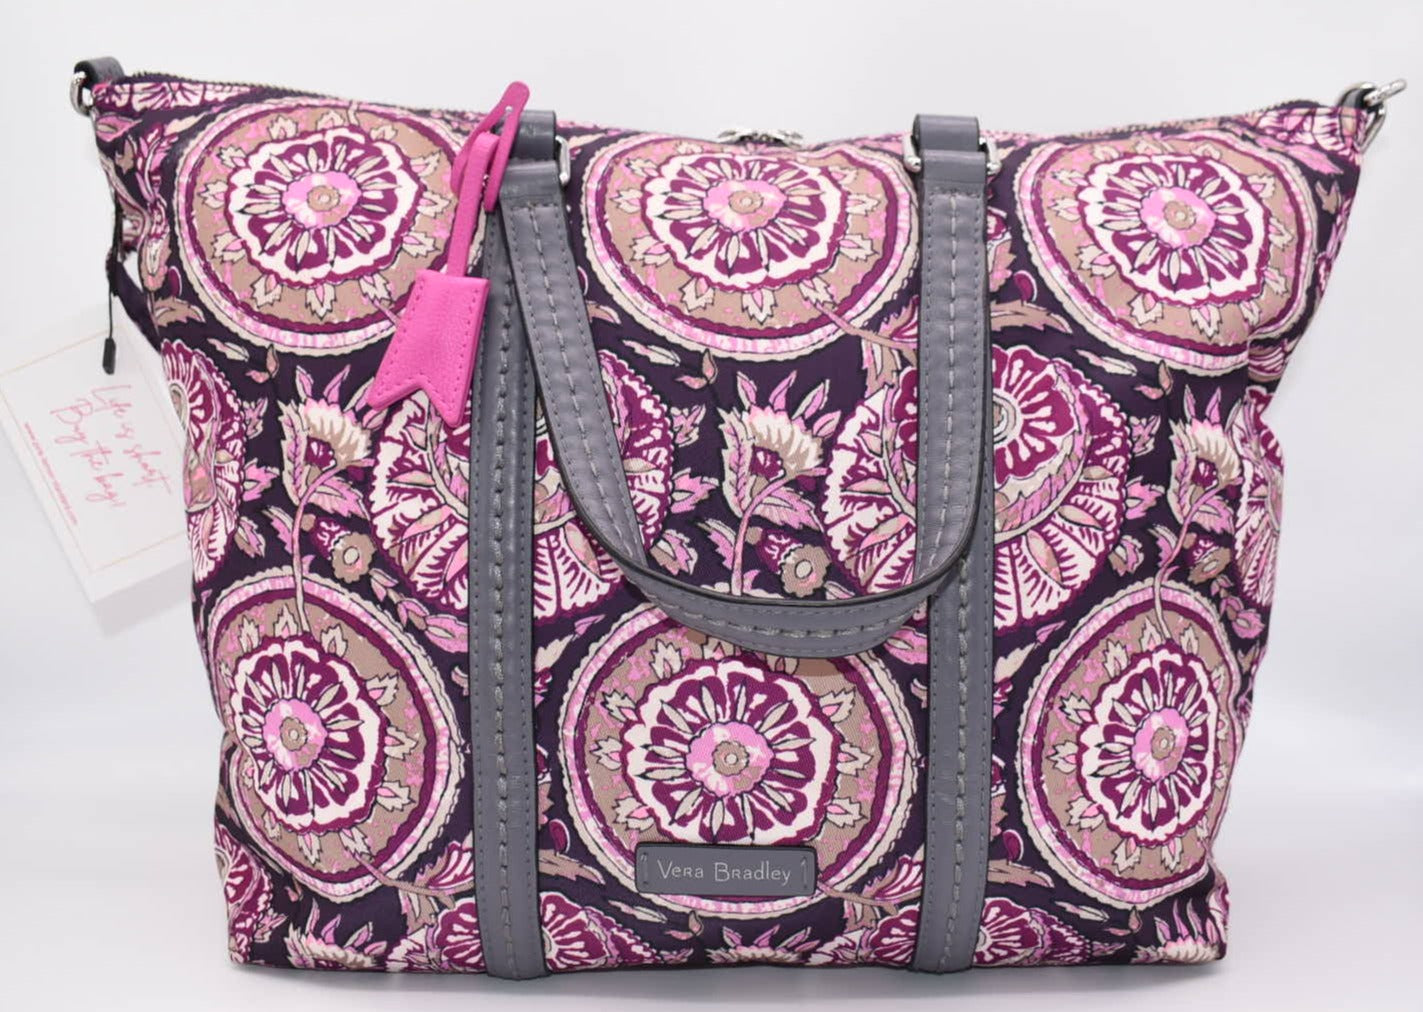 Vera Bradley Midtown Small Tote Bag in "Lei Flowers" Pattern